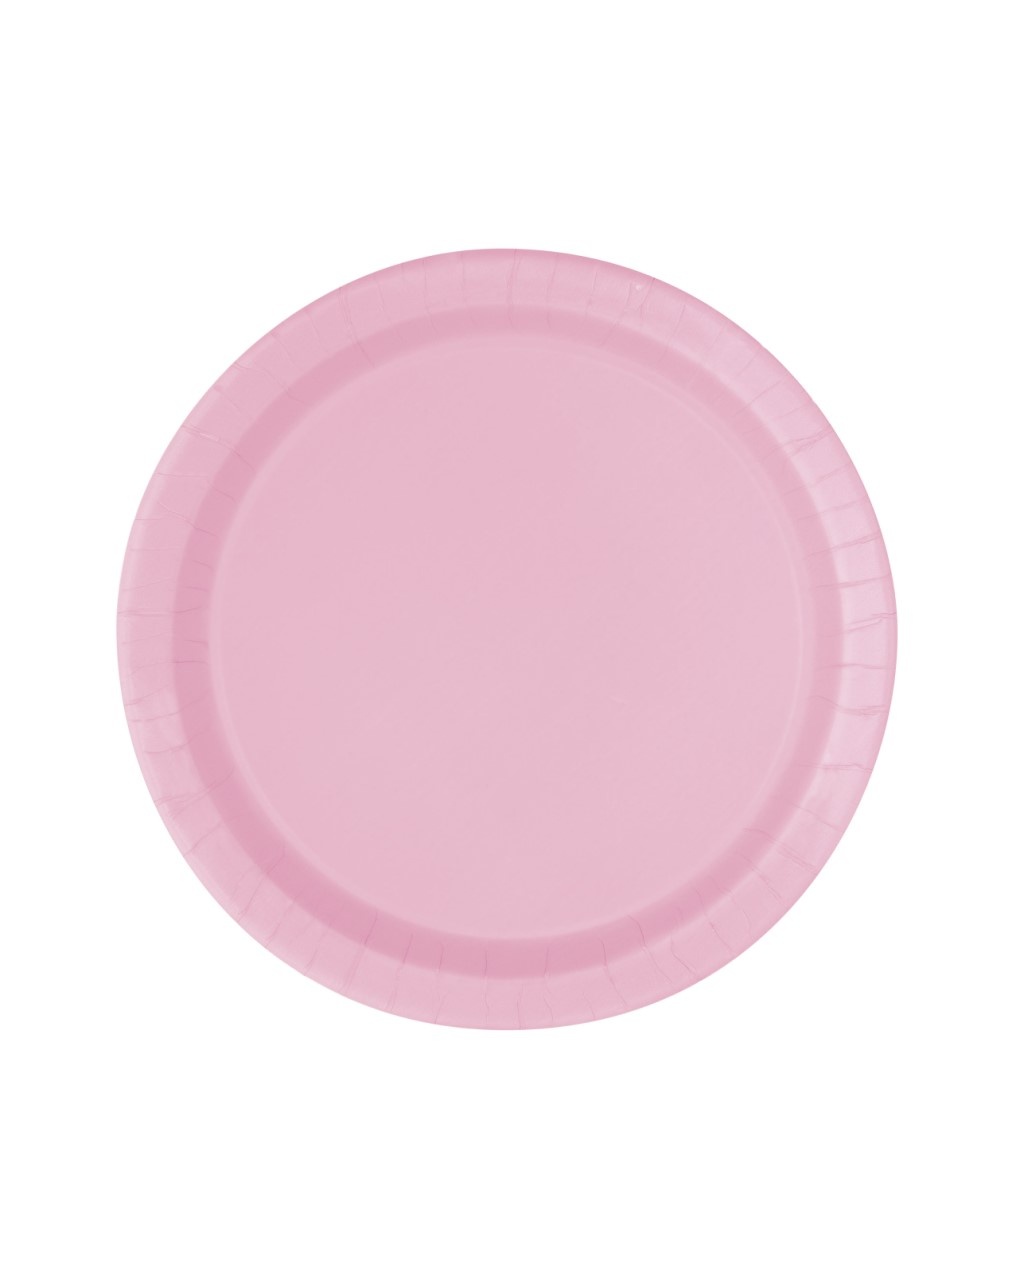 Piatto carta 18 cm - 20 pezzi - rosa pastello